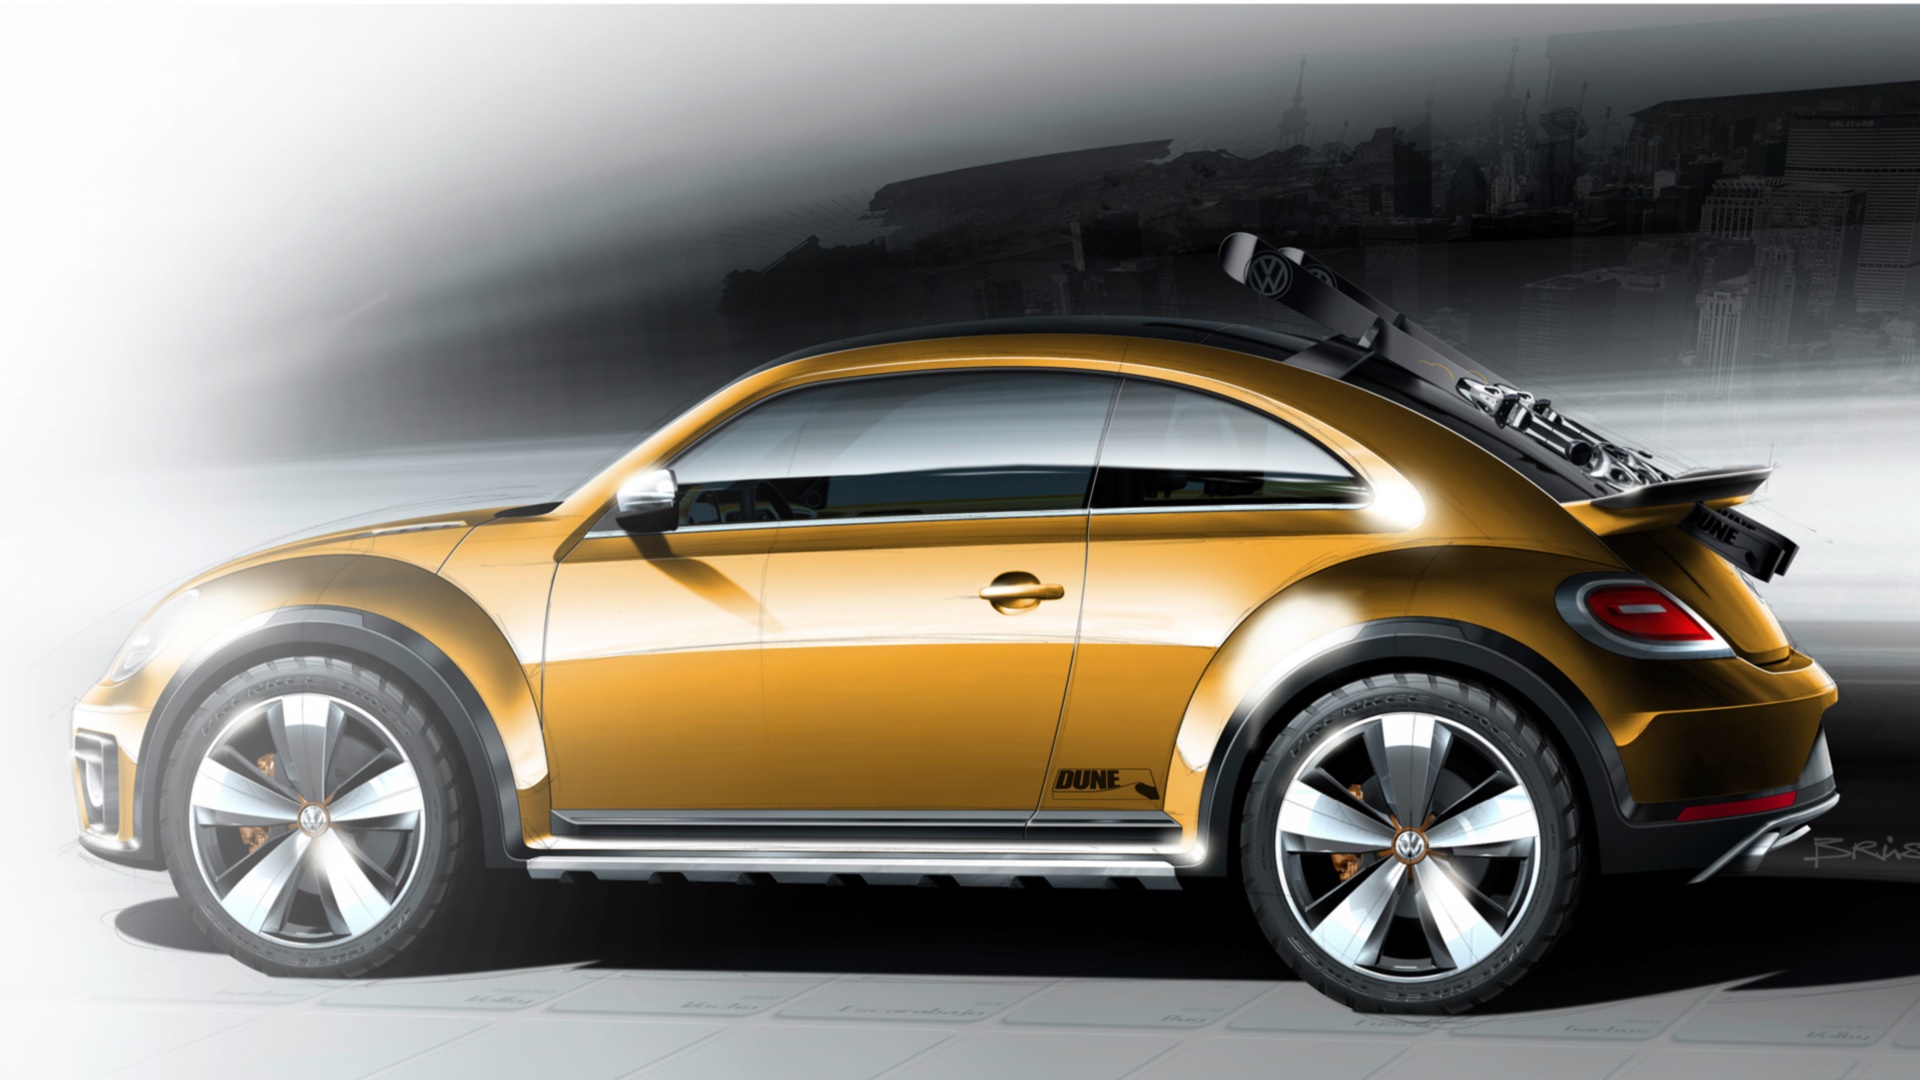 Vehicles 2014 Volkswagen Beetle Dune Concept HD Wallpaper | Background Image